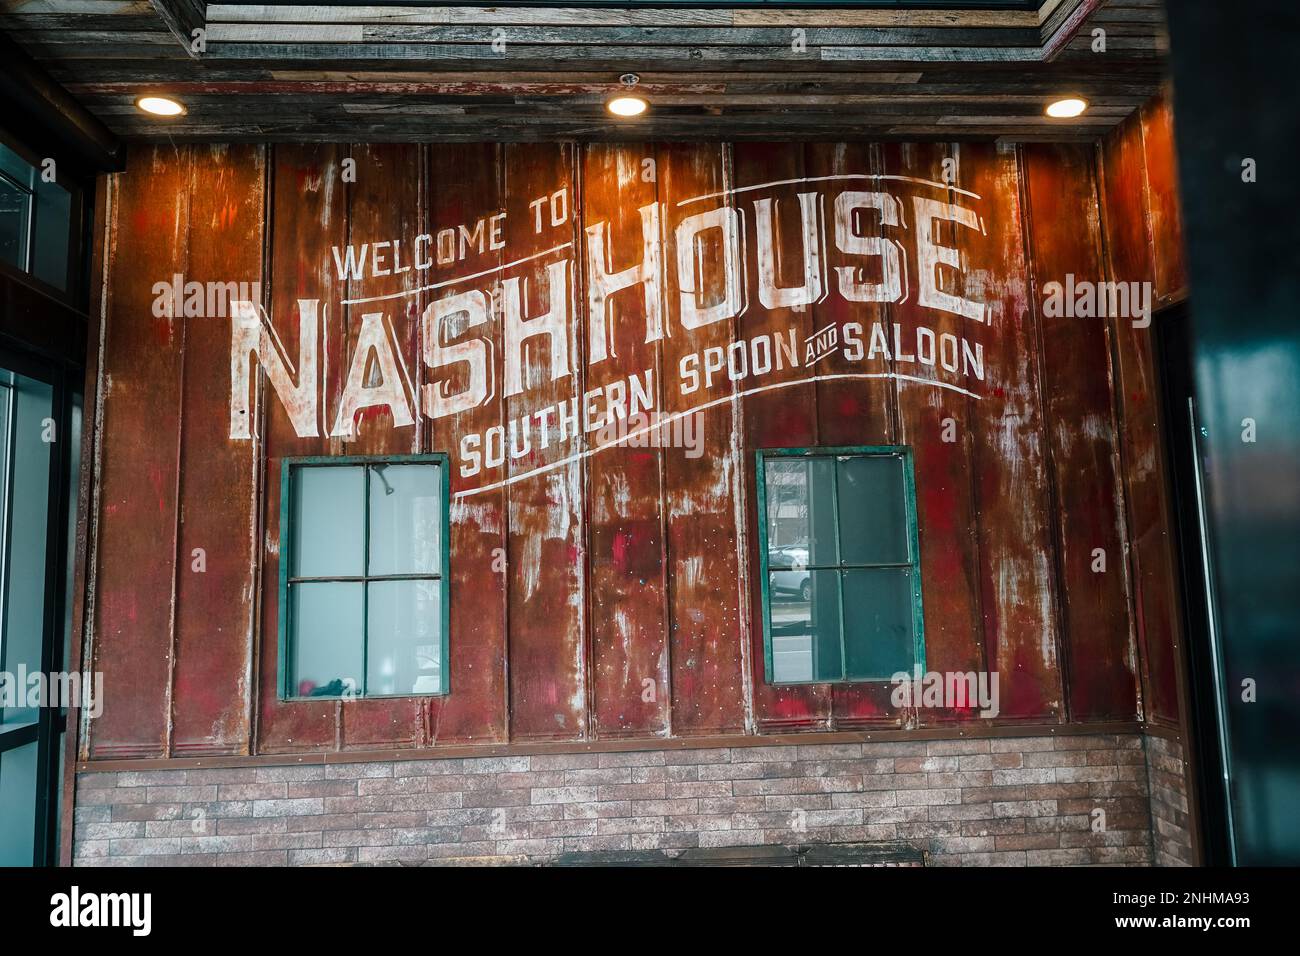 Nashhouse Southern Löffel und Saloon, rustikales industrielles Outlet, das herzhaftes südliches Essen zusammen mit gezapften Speisen, Whiskey und Cocktails bietet Stockfoto